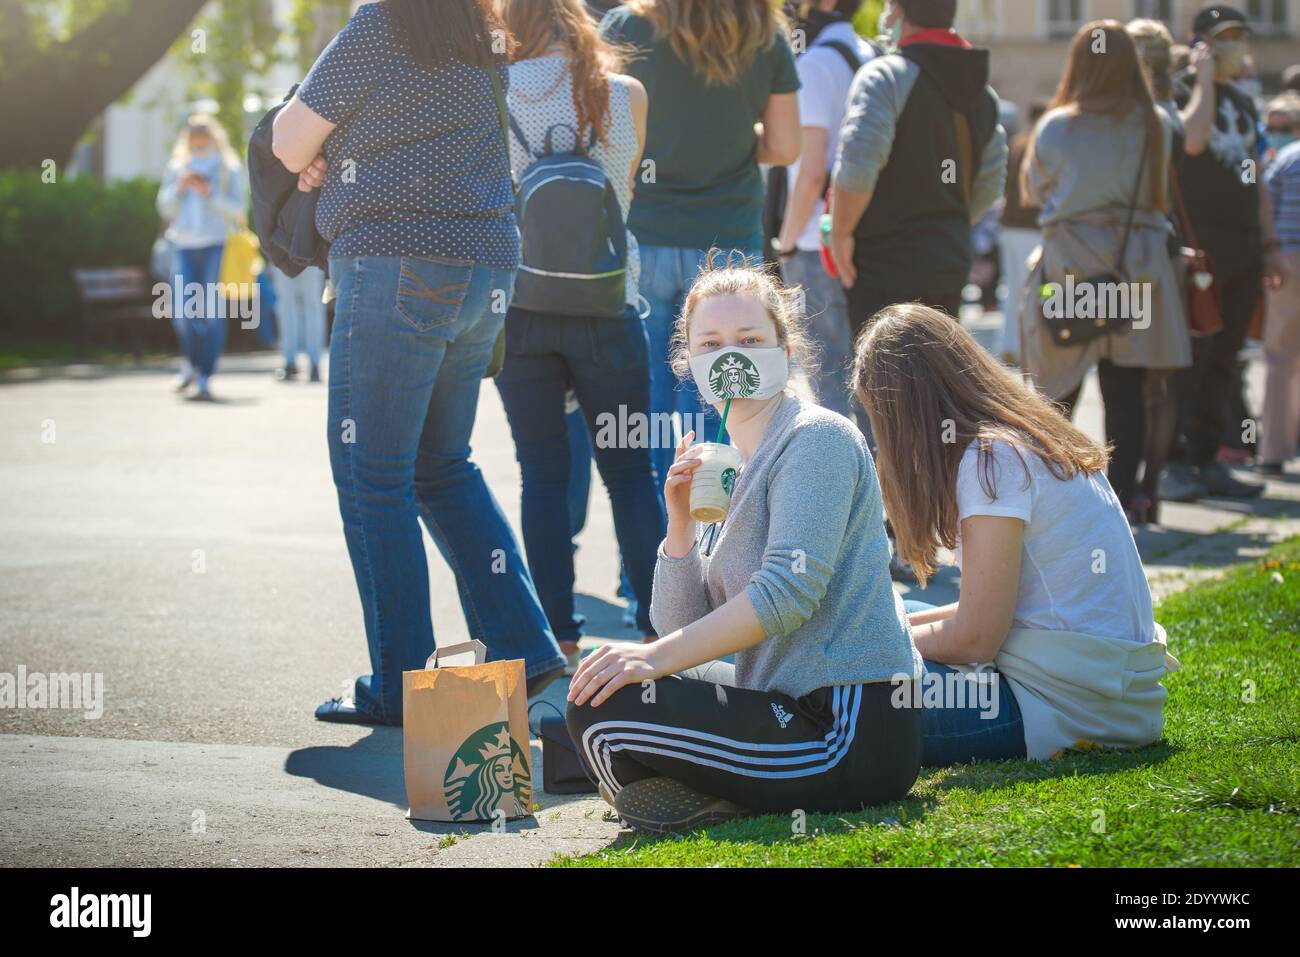 Une fille qui boit du café Starbucks sous un masque facial en tissu avec le logo Starbucks, est assise sur le sol à côté d'une file d'attente pour un test de virus corona. Banque D'Images